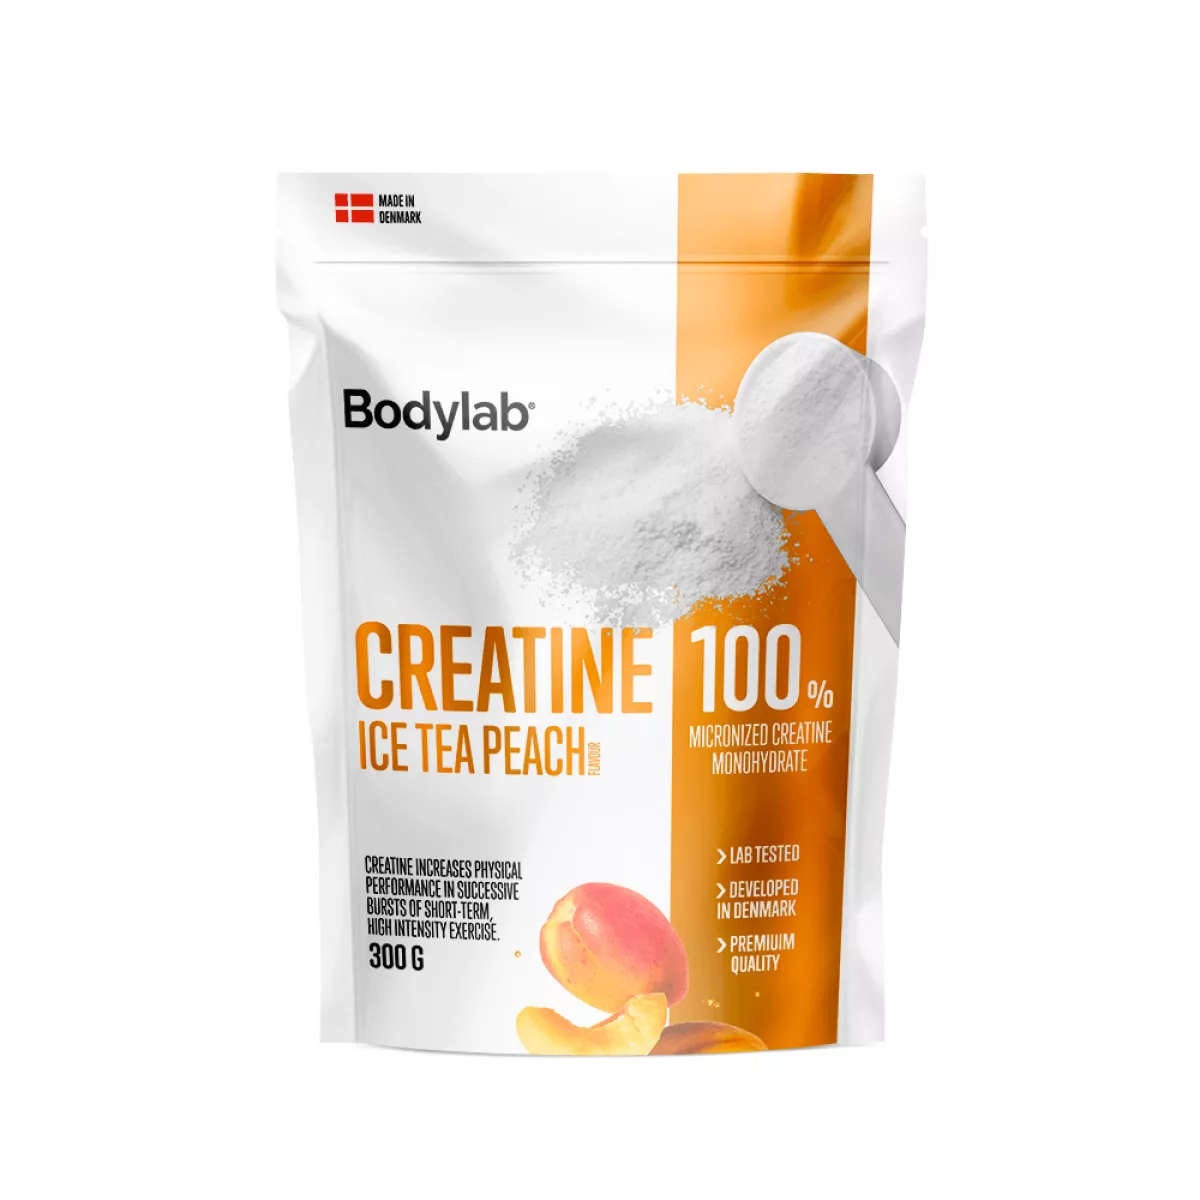 #1 - Bodylab Kreatin (300g) - Ice Tea Peach